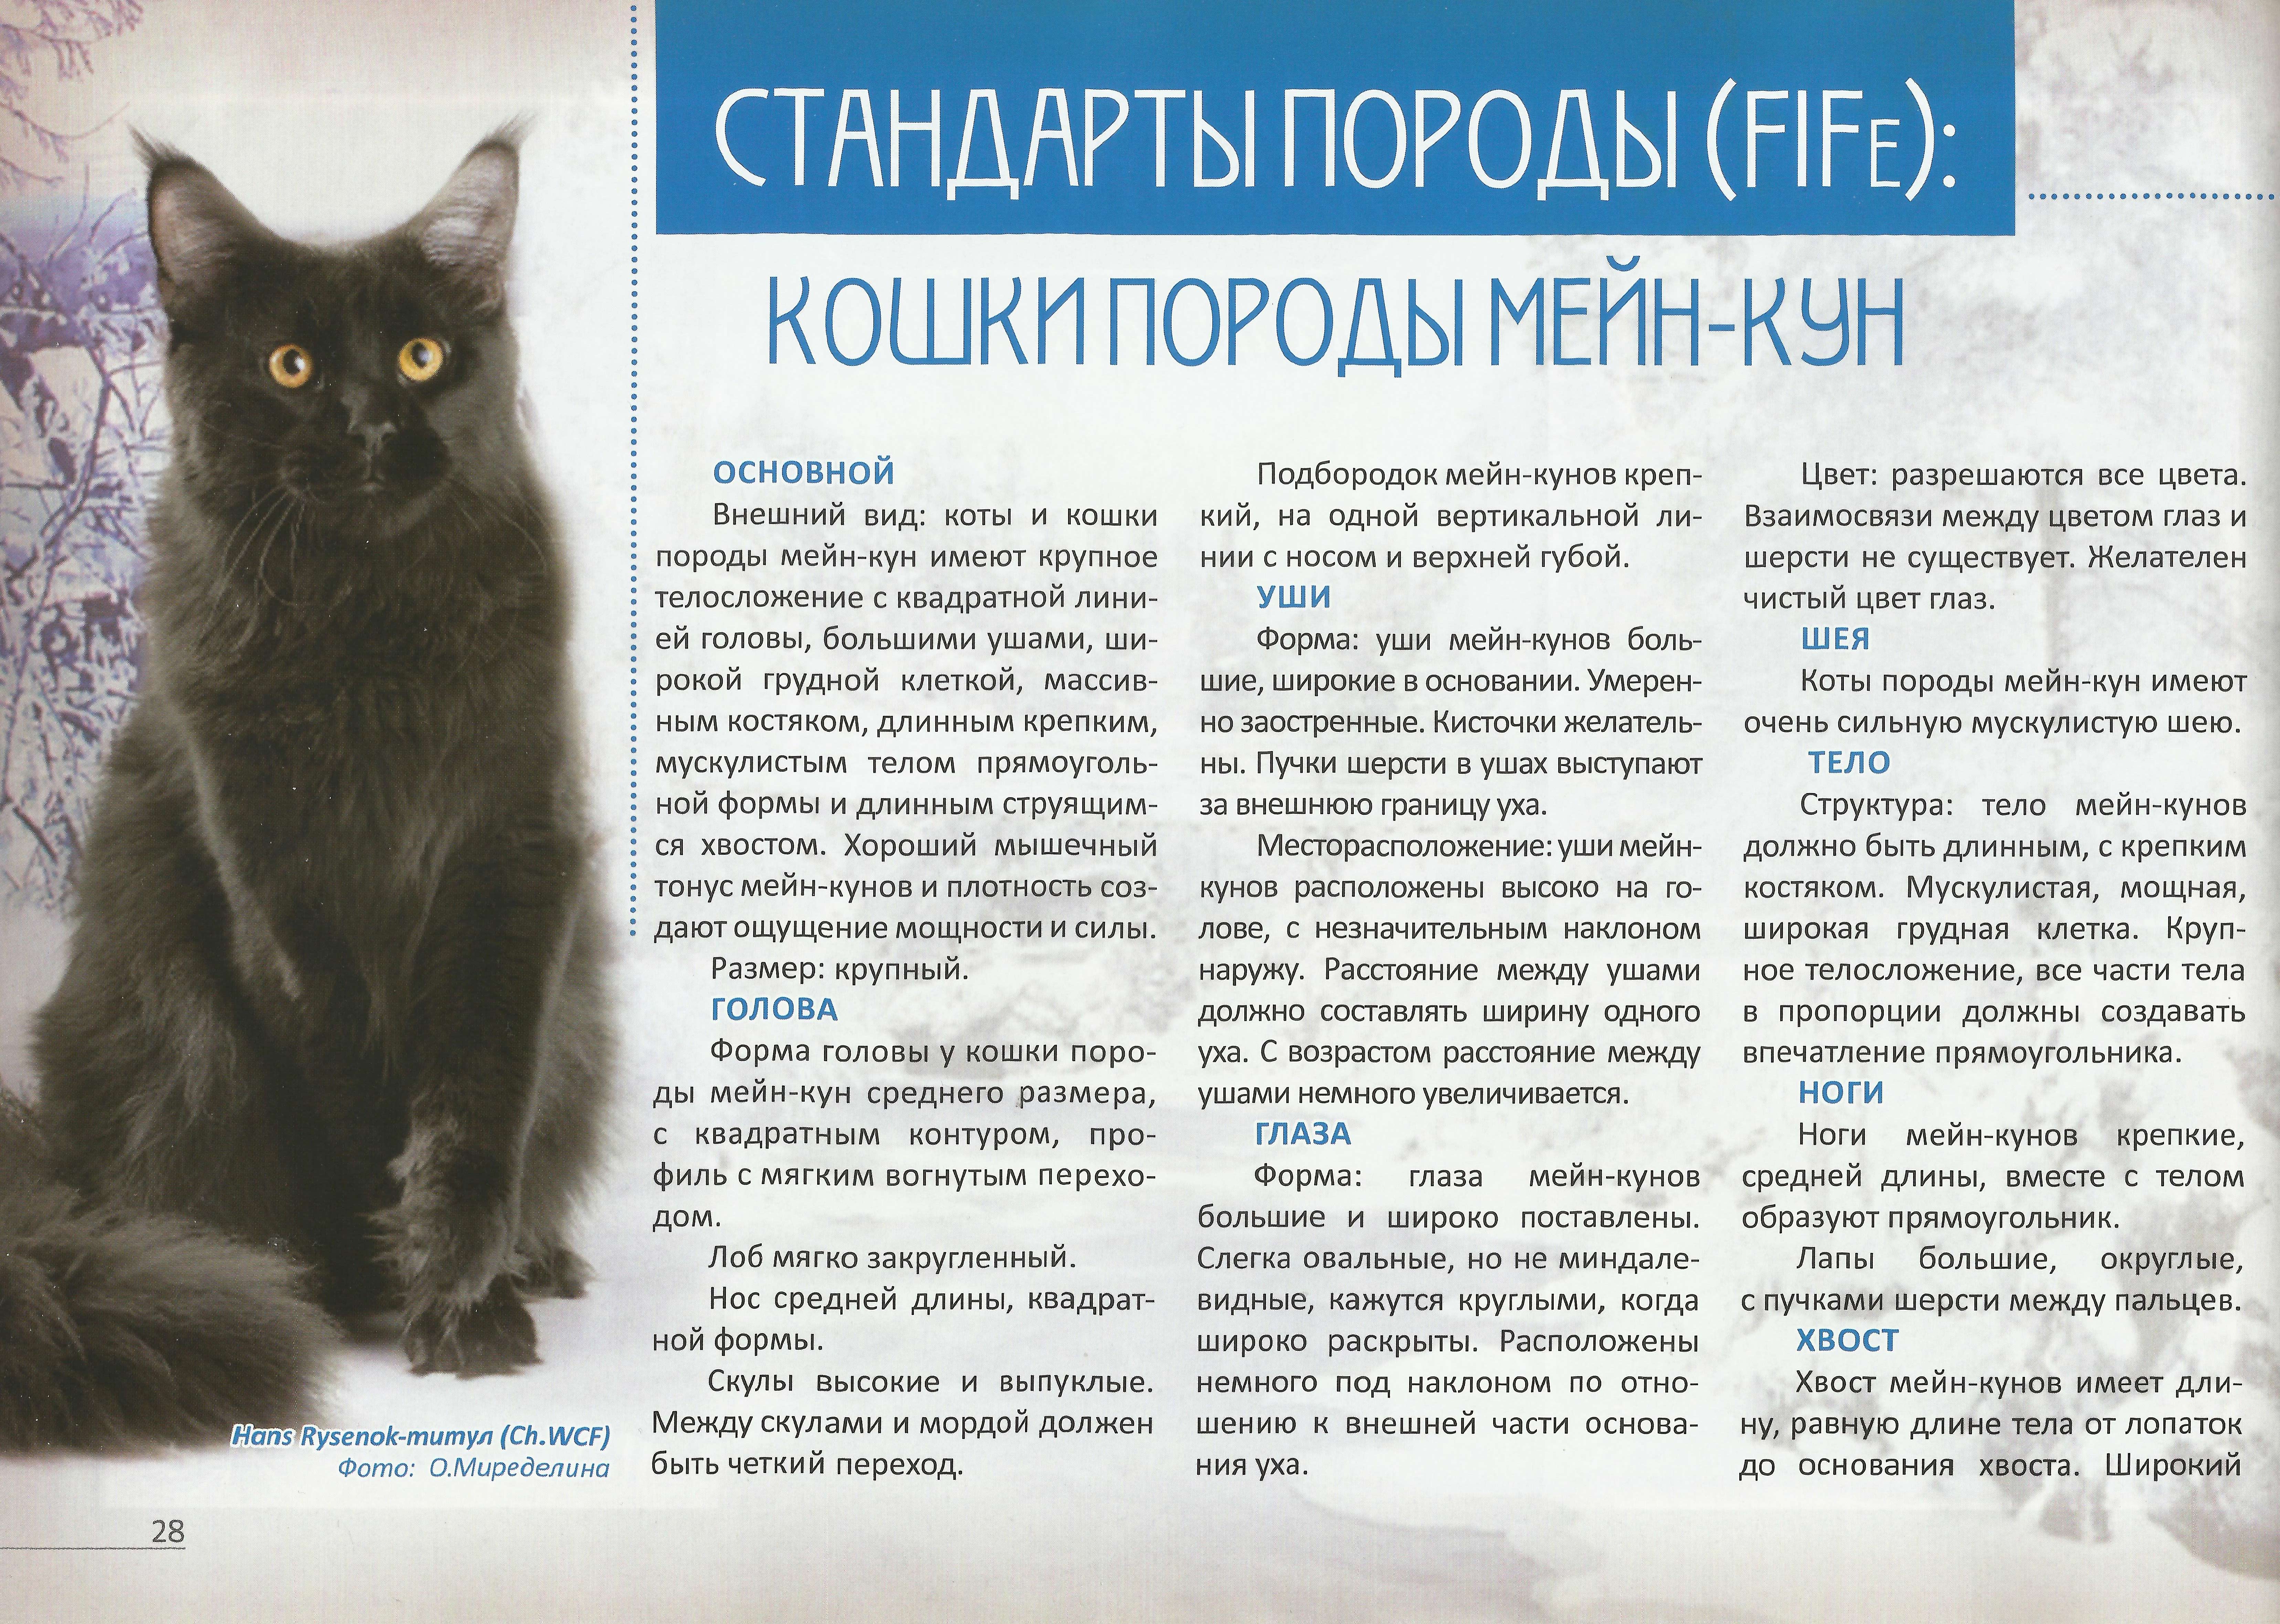 Хайленд-фолд: вислоухая полудлинношёрстная кошка